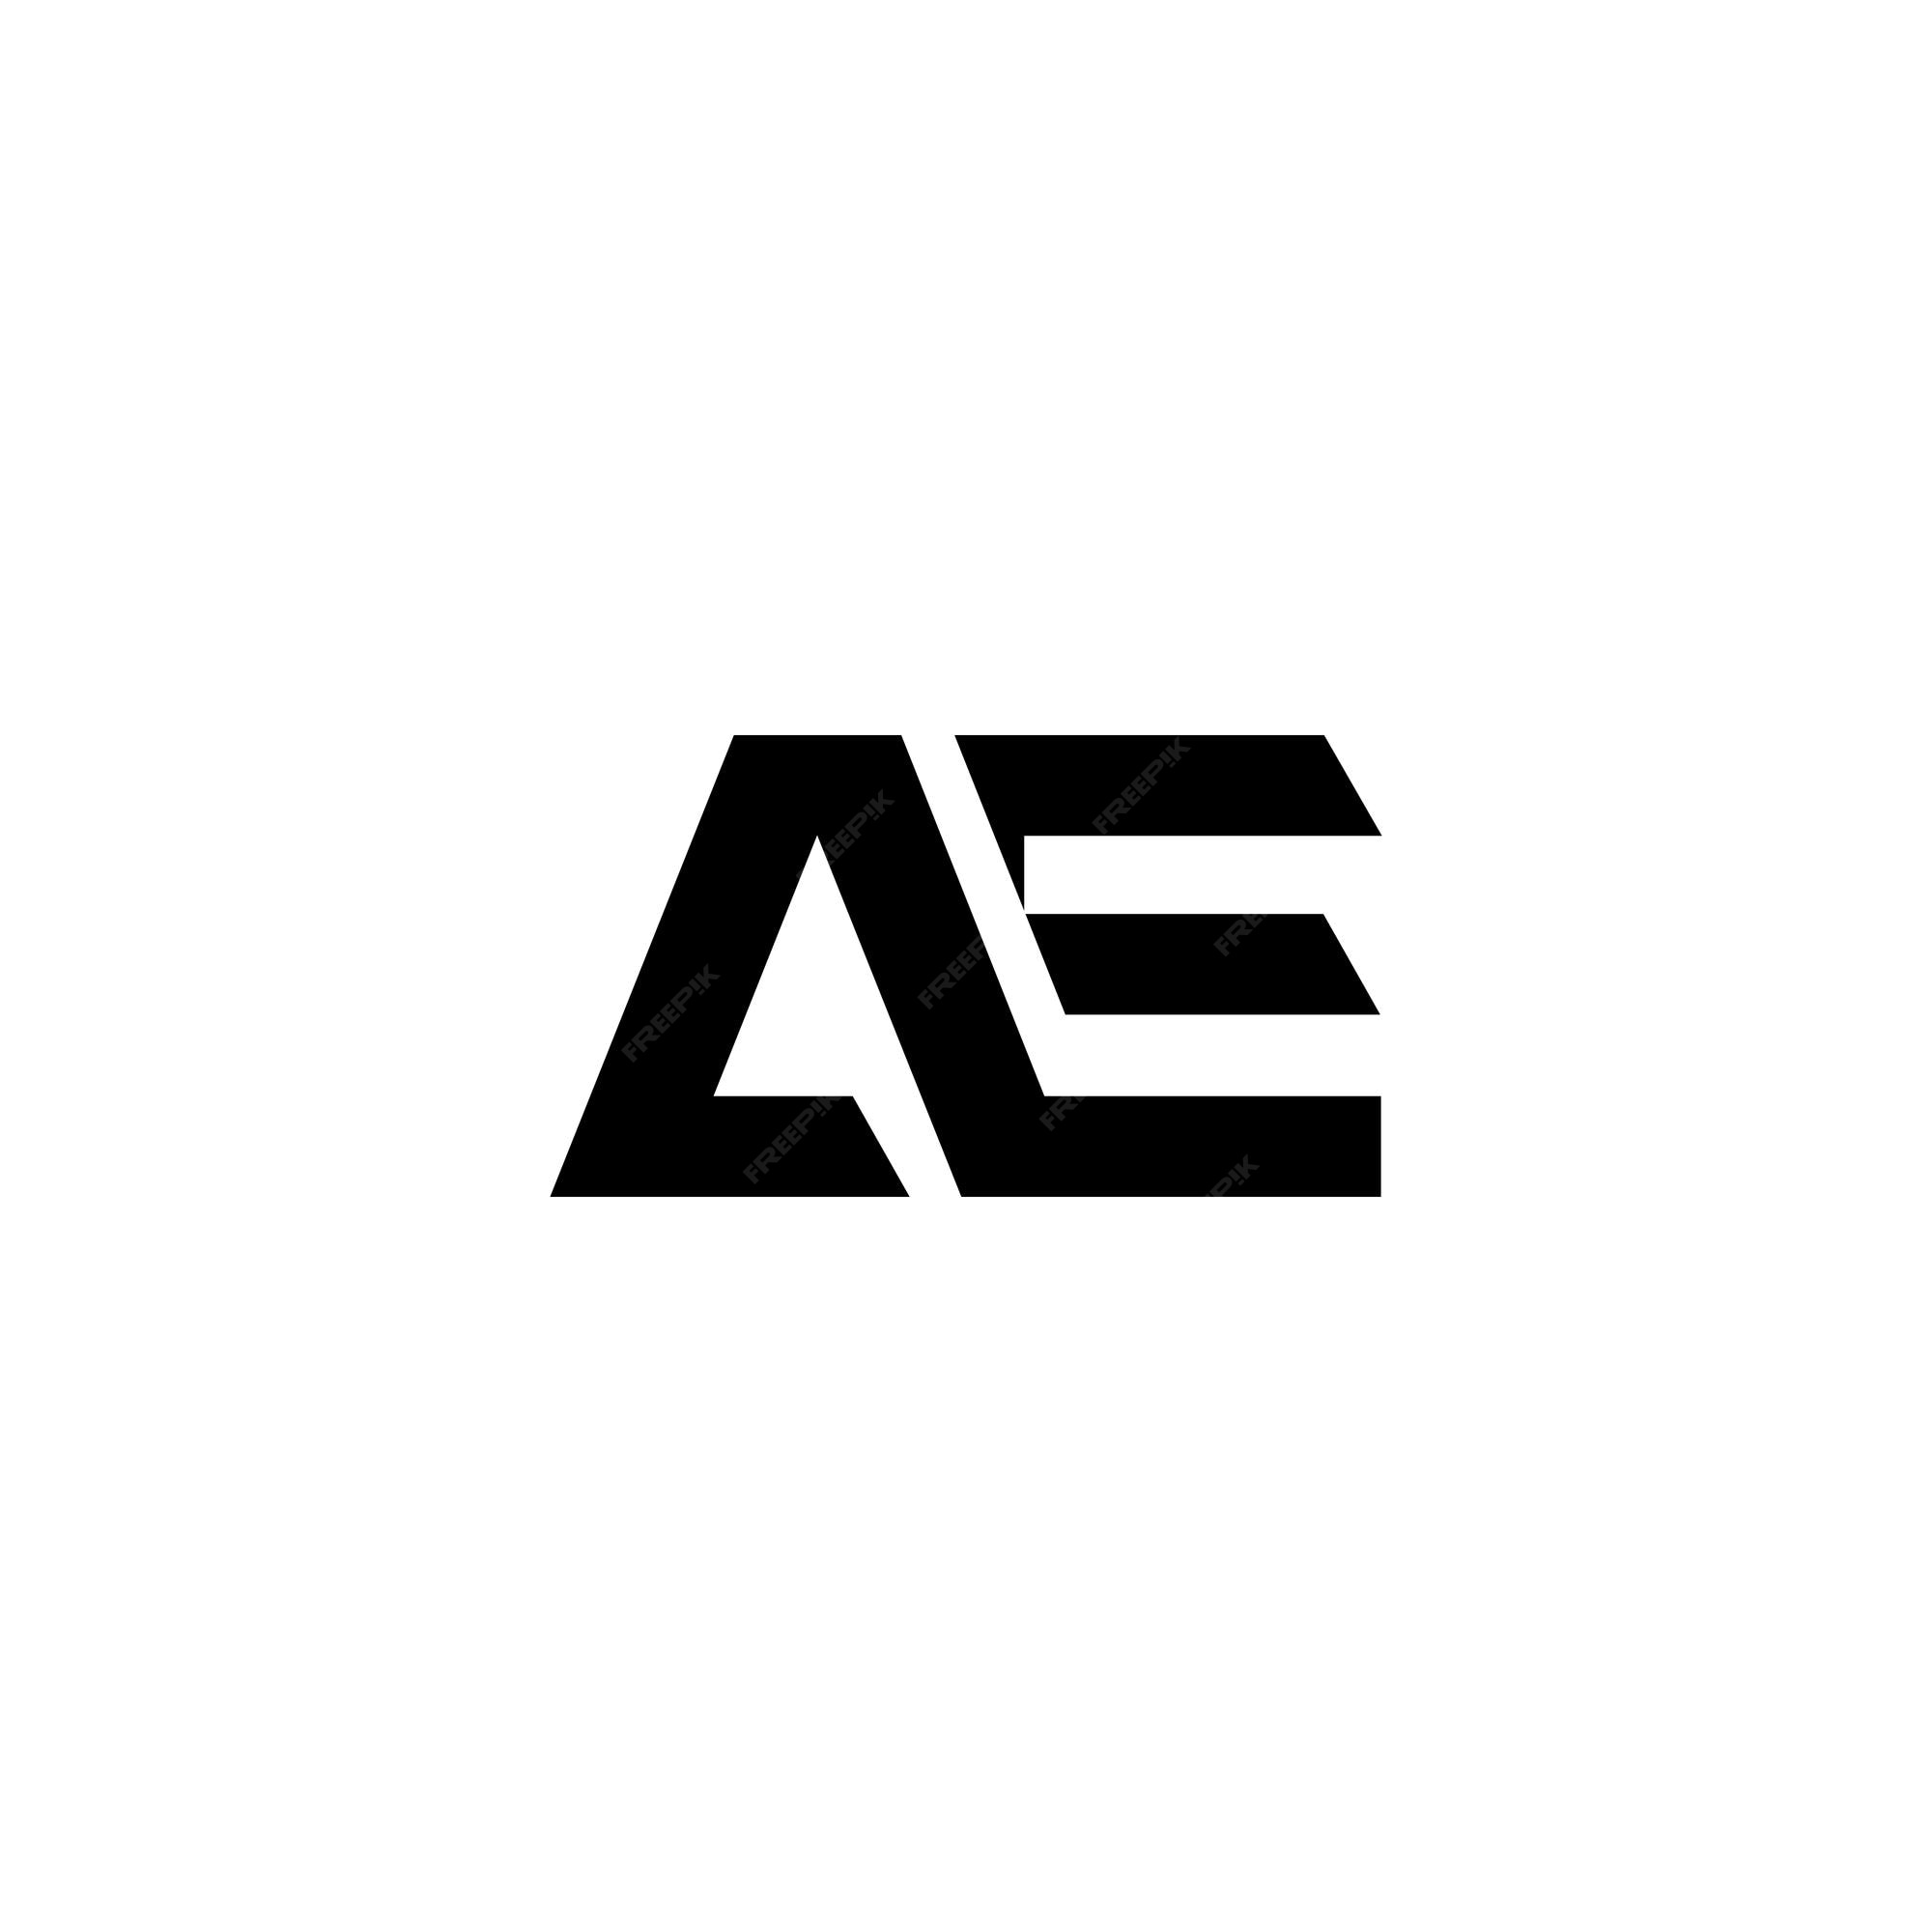 Premium Vector | Ae logo